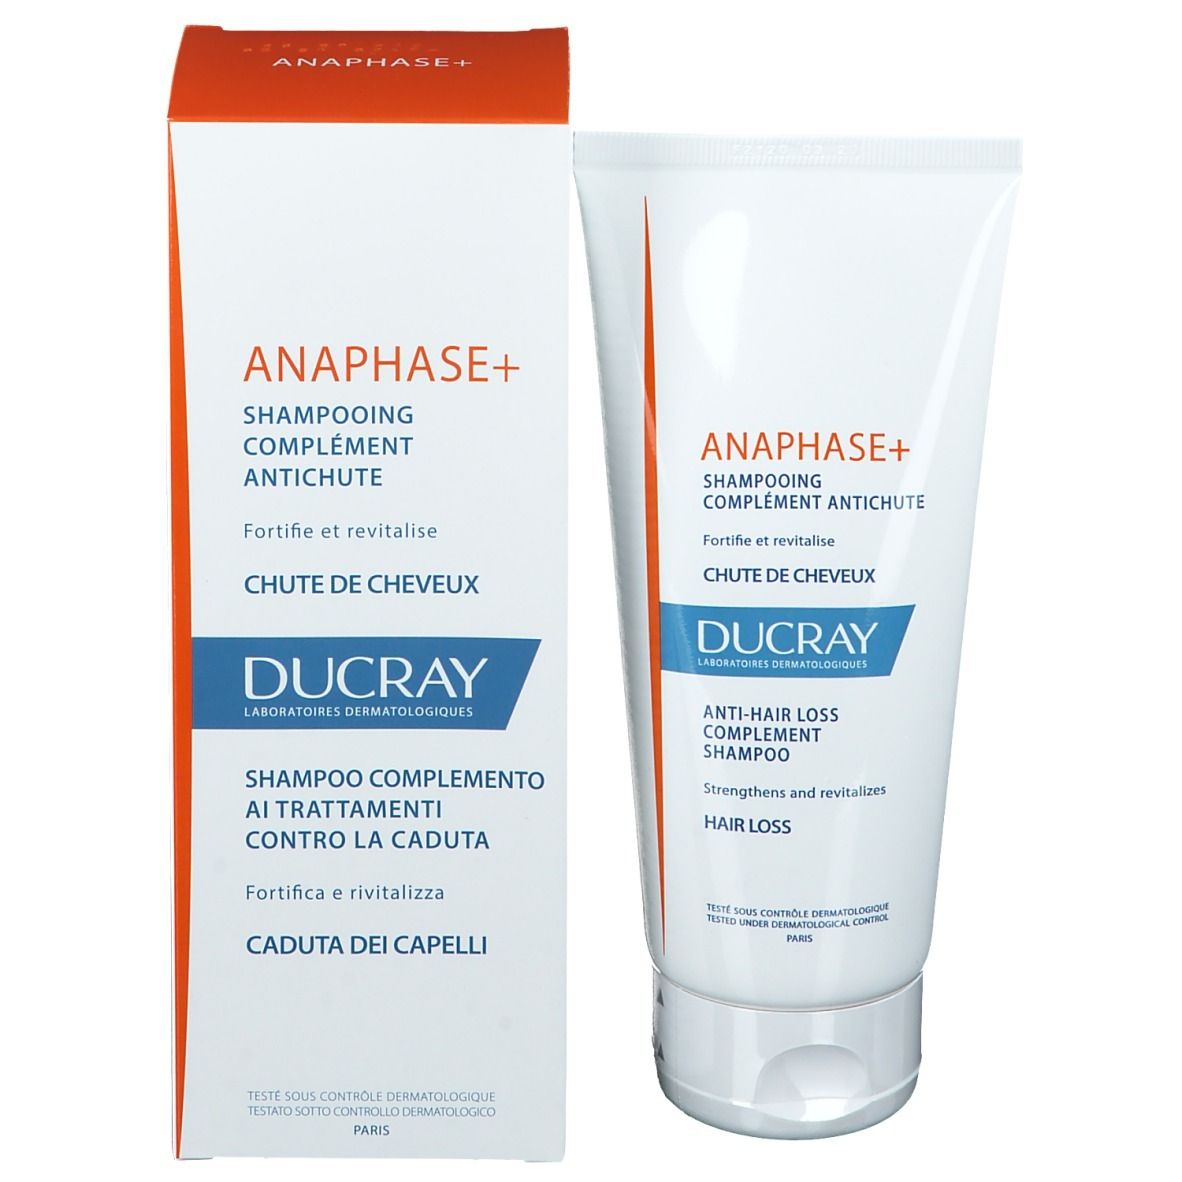  DUCRAY Anaphase+ Shampoo